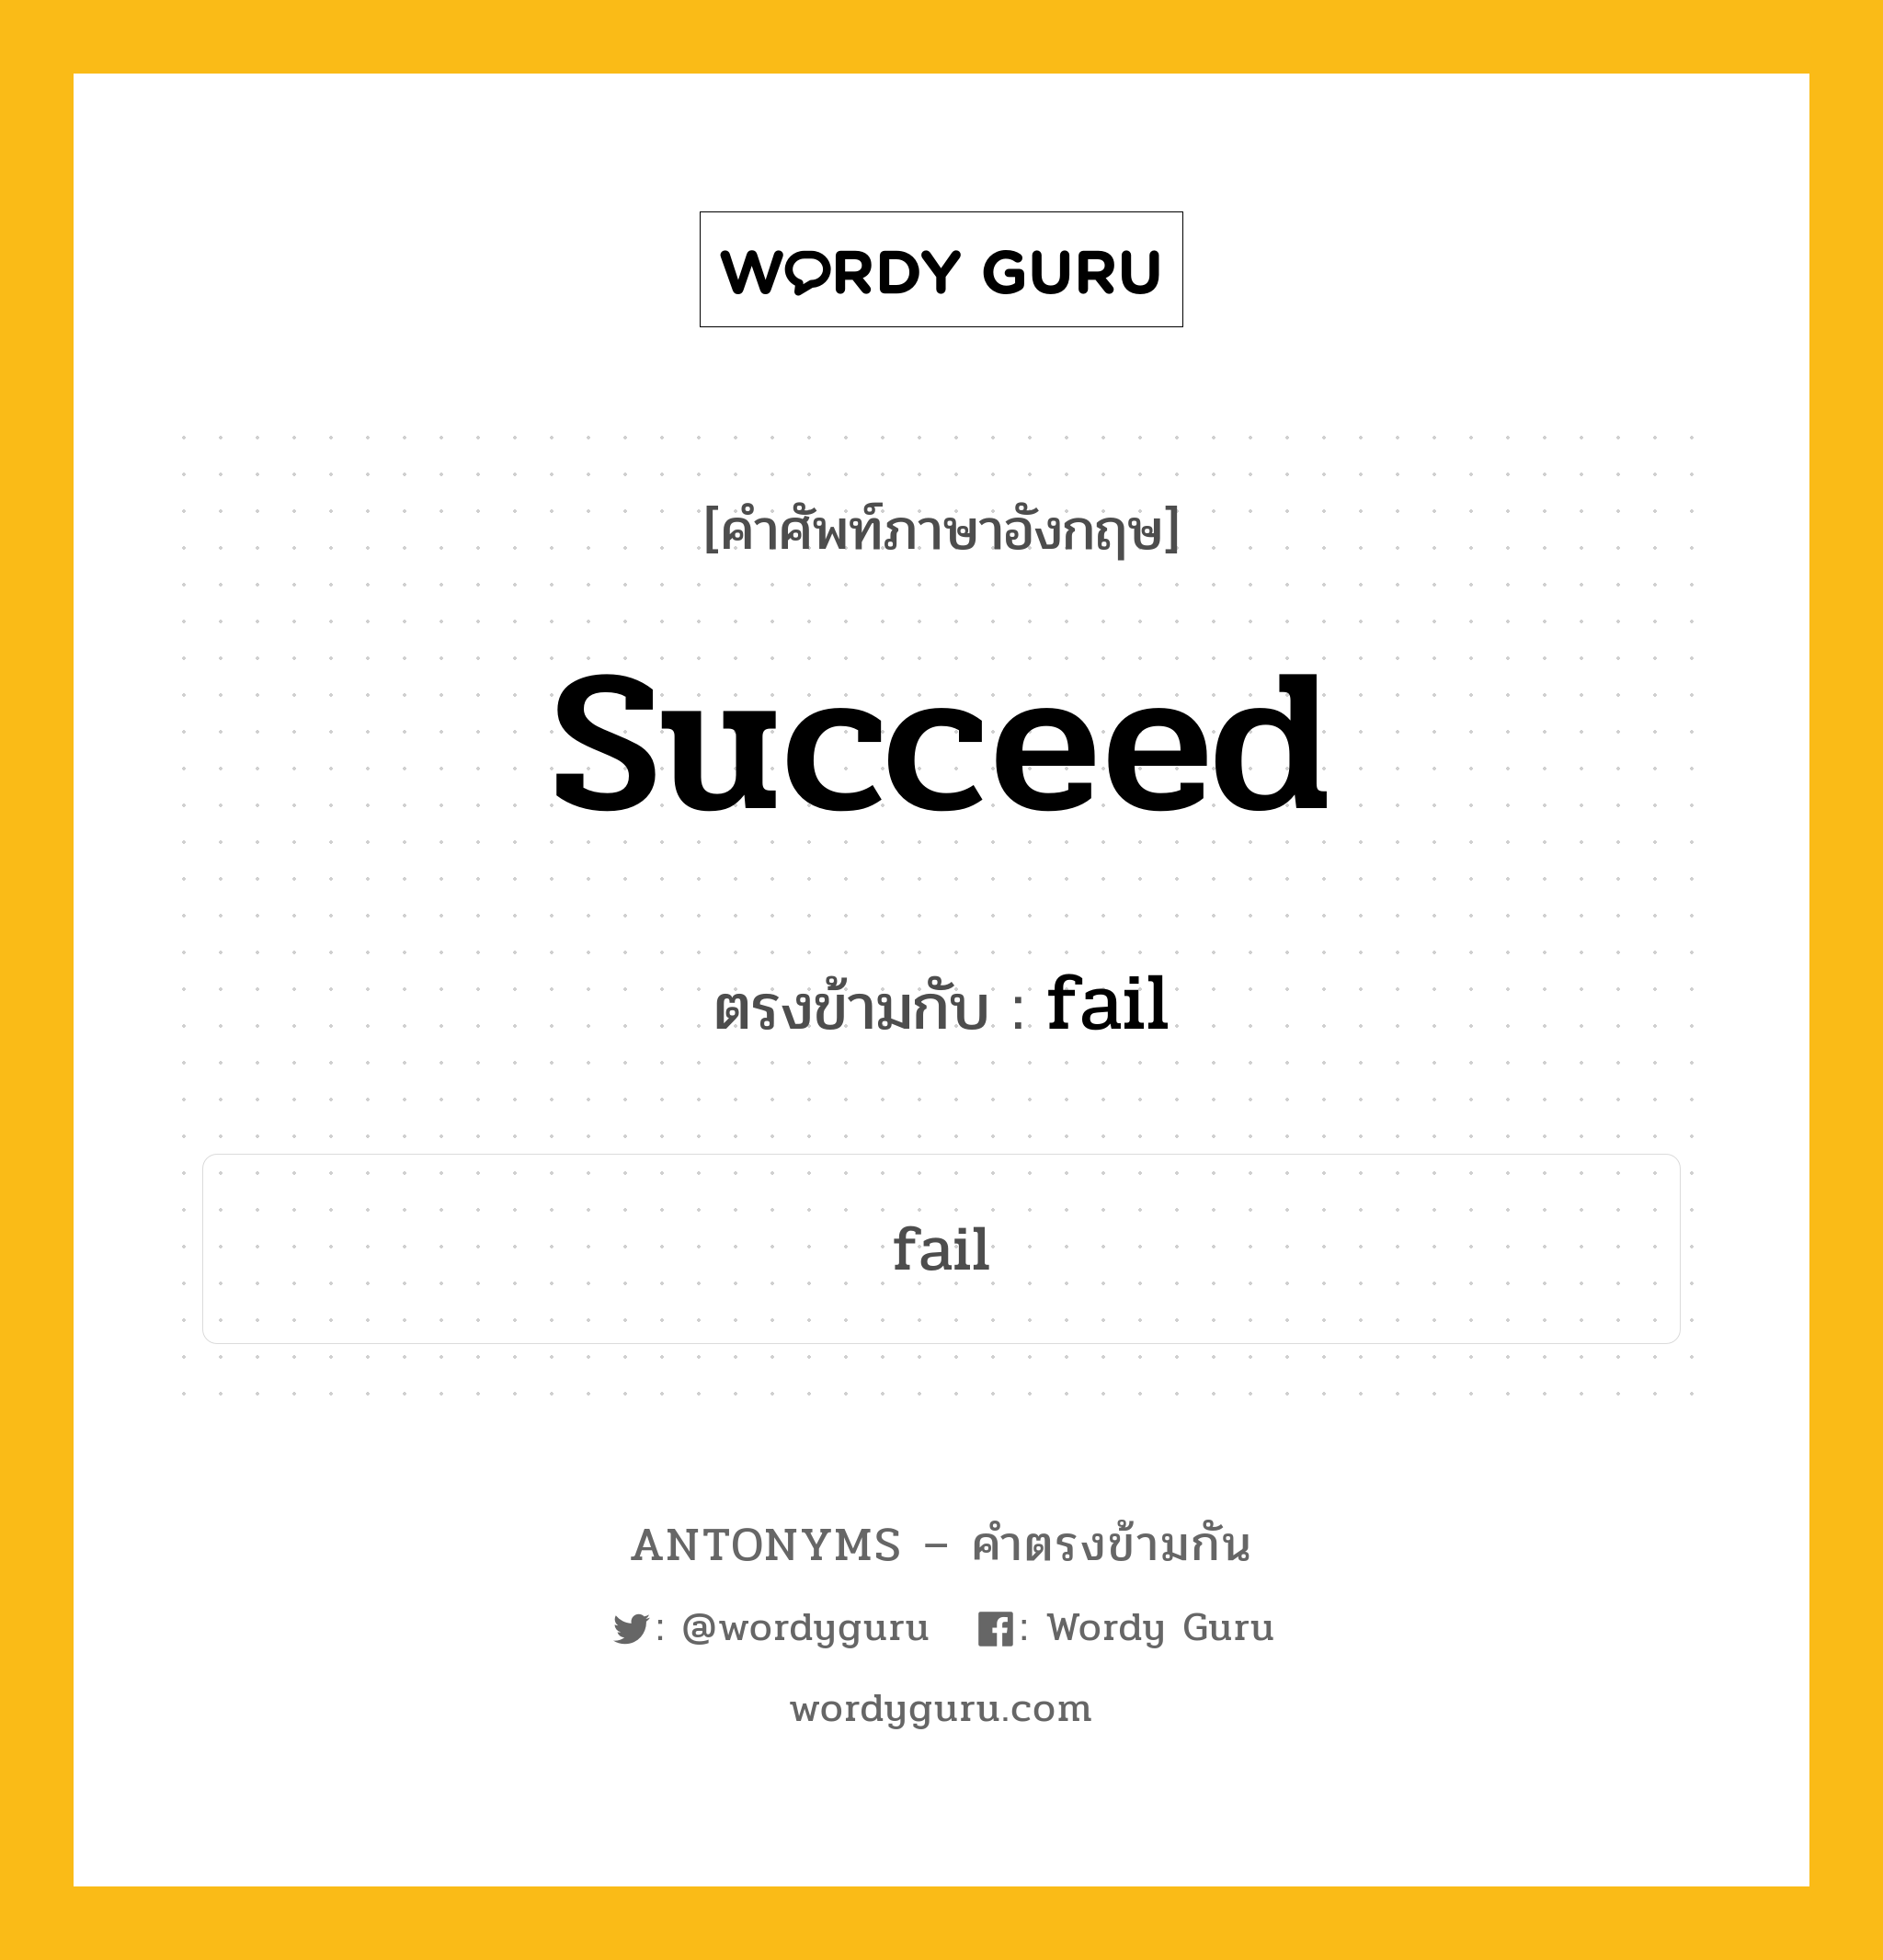 succeed เป็นคำตรงข้ามกับคำไหนบ้าง?, คำศัพท์ภาษาอังกฤษ succeed ตรงข้ามกับ fail หมวด fail